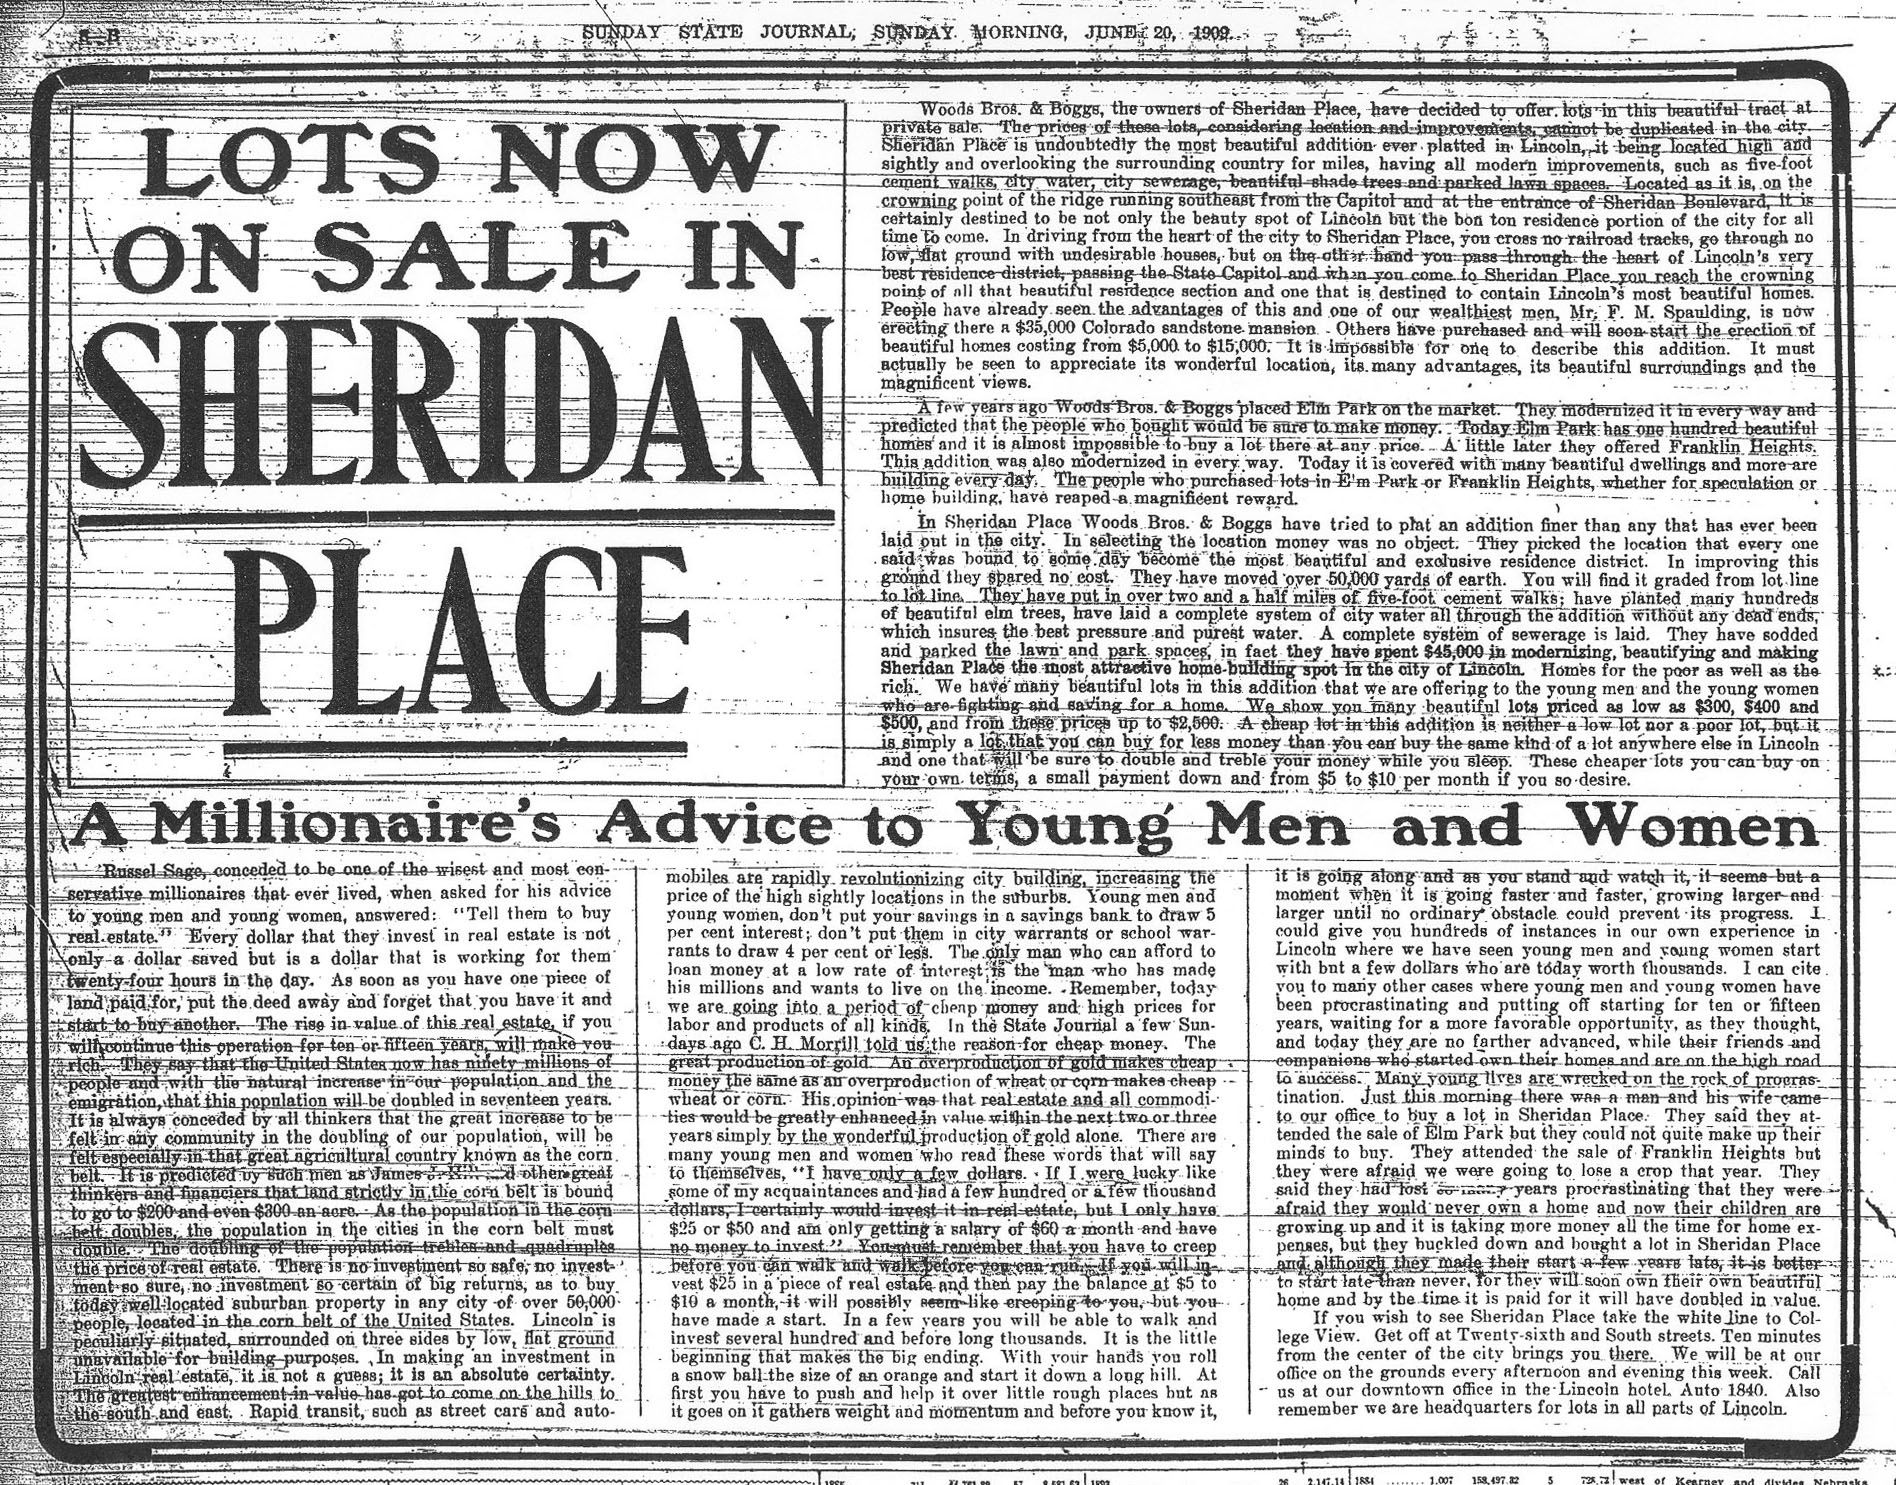 1909 Sunday State Journal Advertisement about Sheridan Boulevard Lots